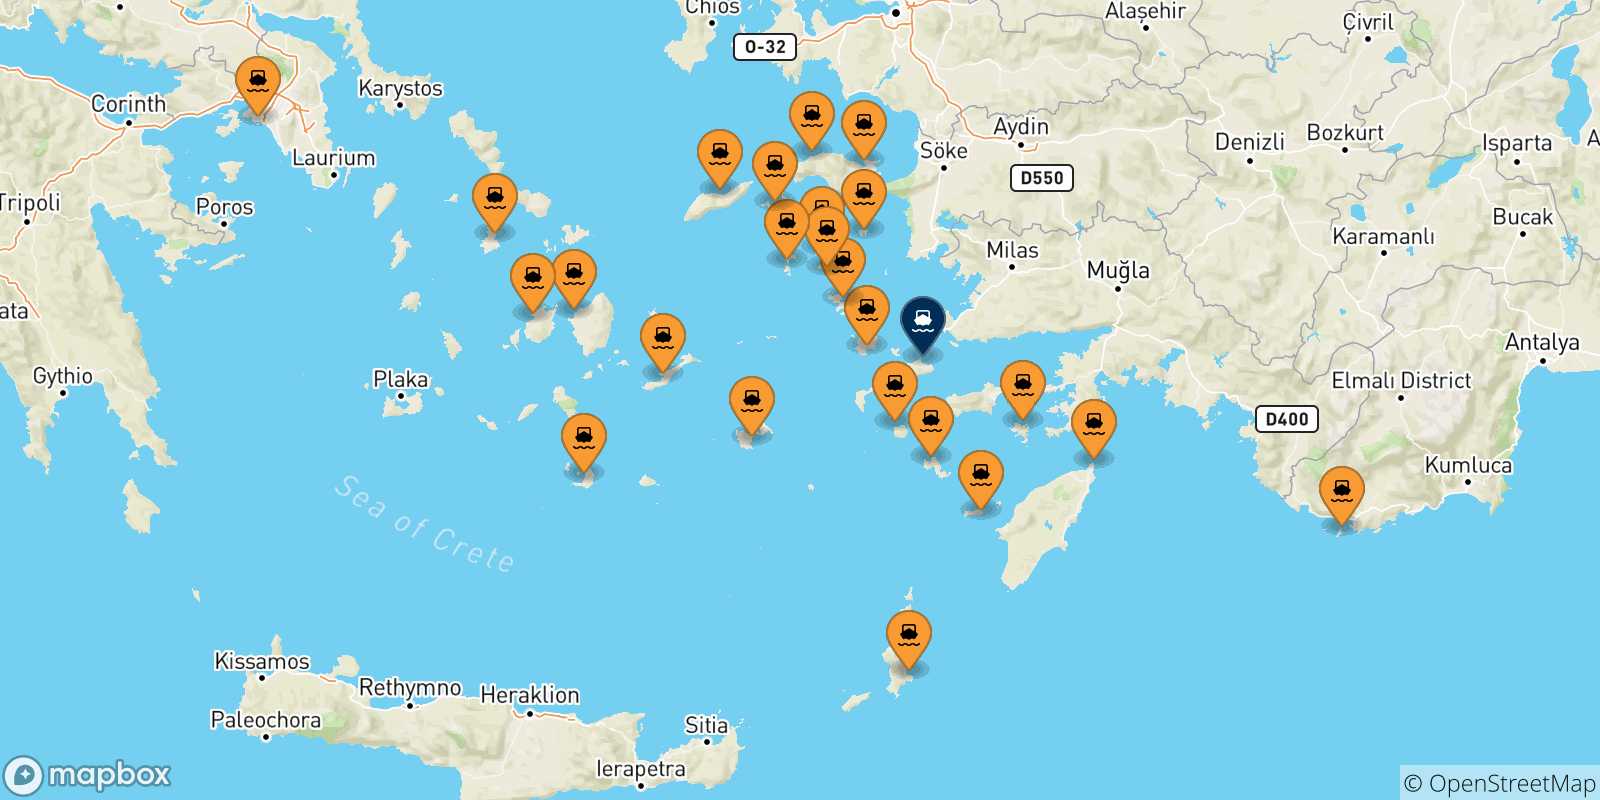 Mappa delle possibili rotte tra la Grecia e Kos